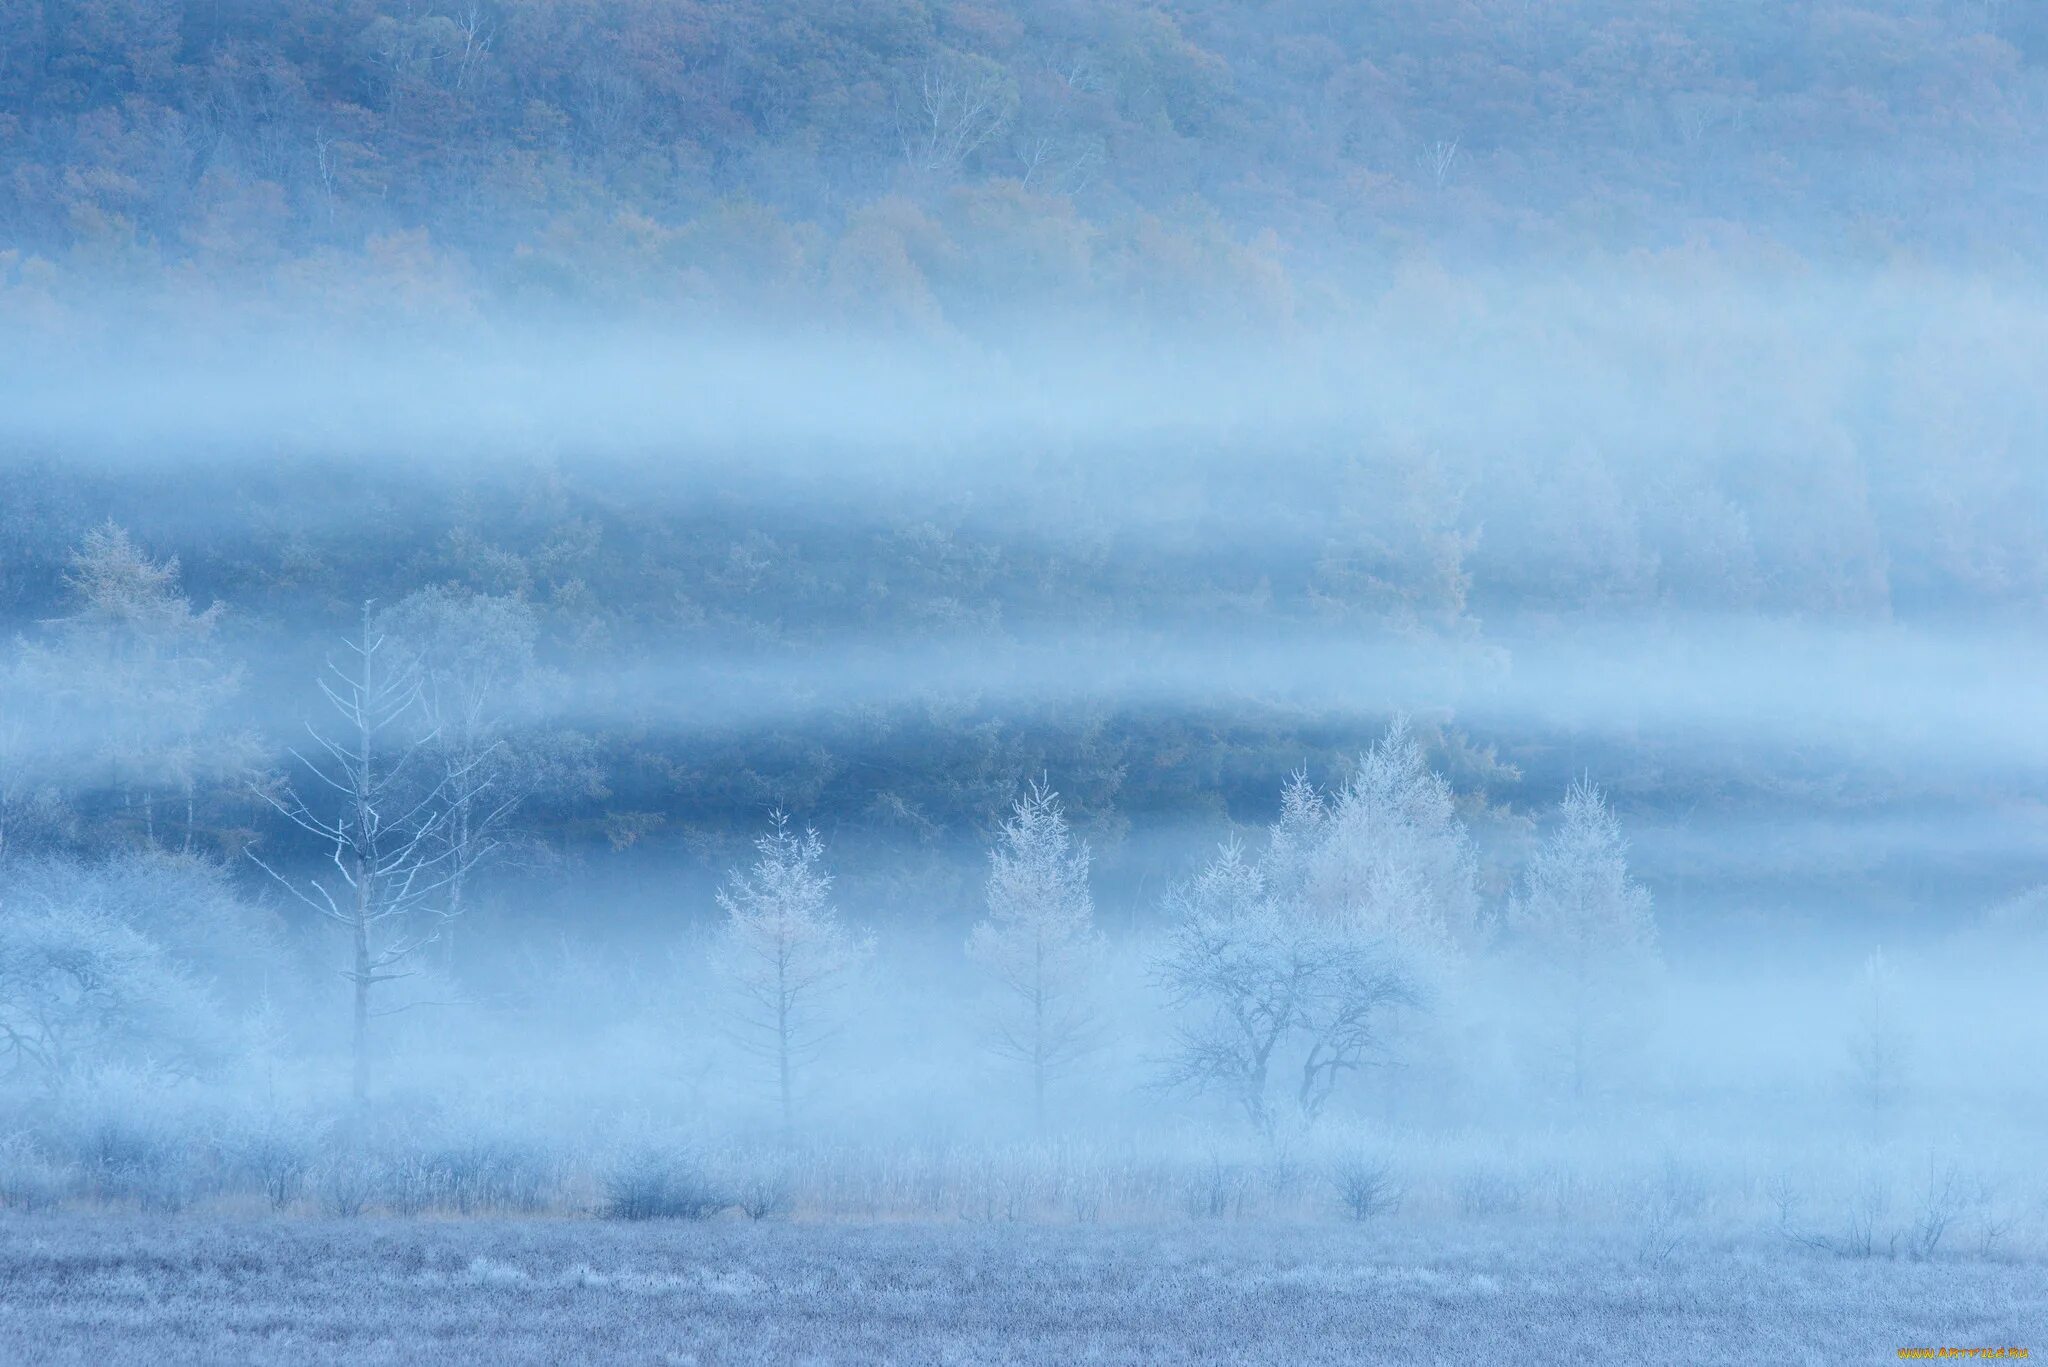 Дымка снега. Снежная дымка. Заснеженное поле. Голубая дымка. Зимние деревья в тумане.